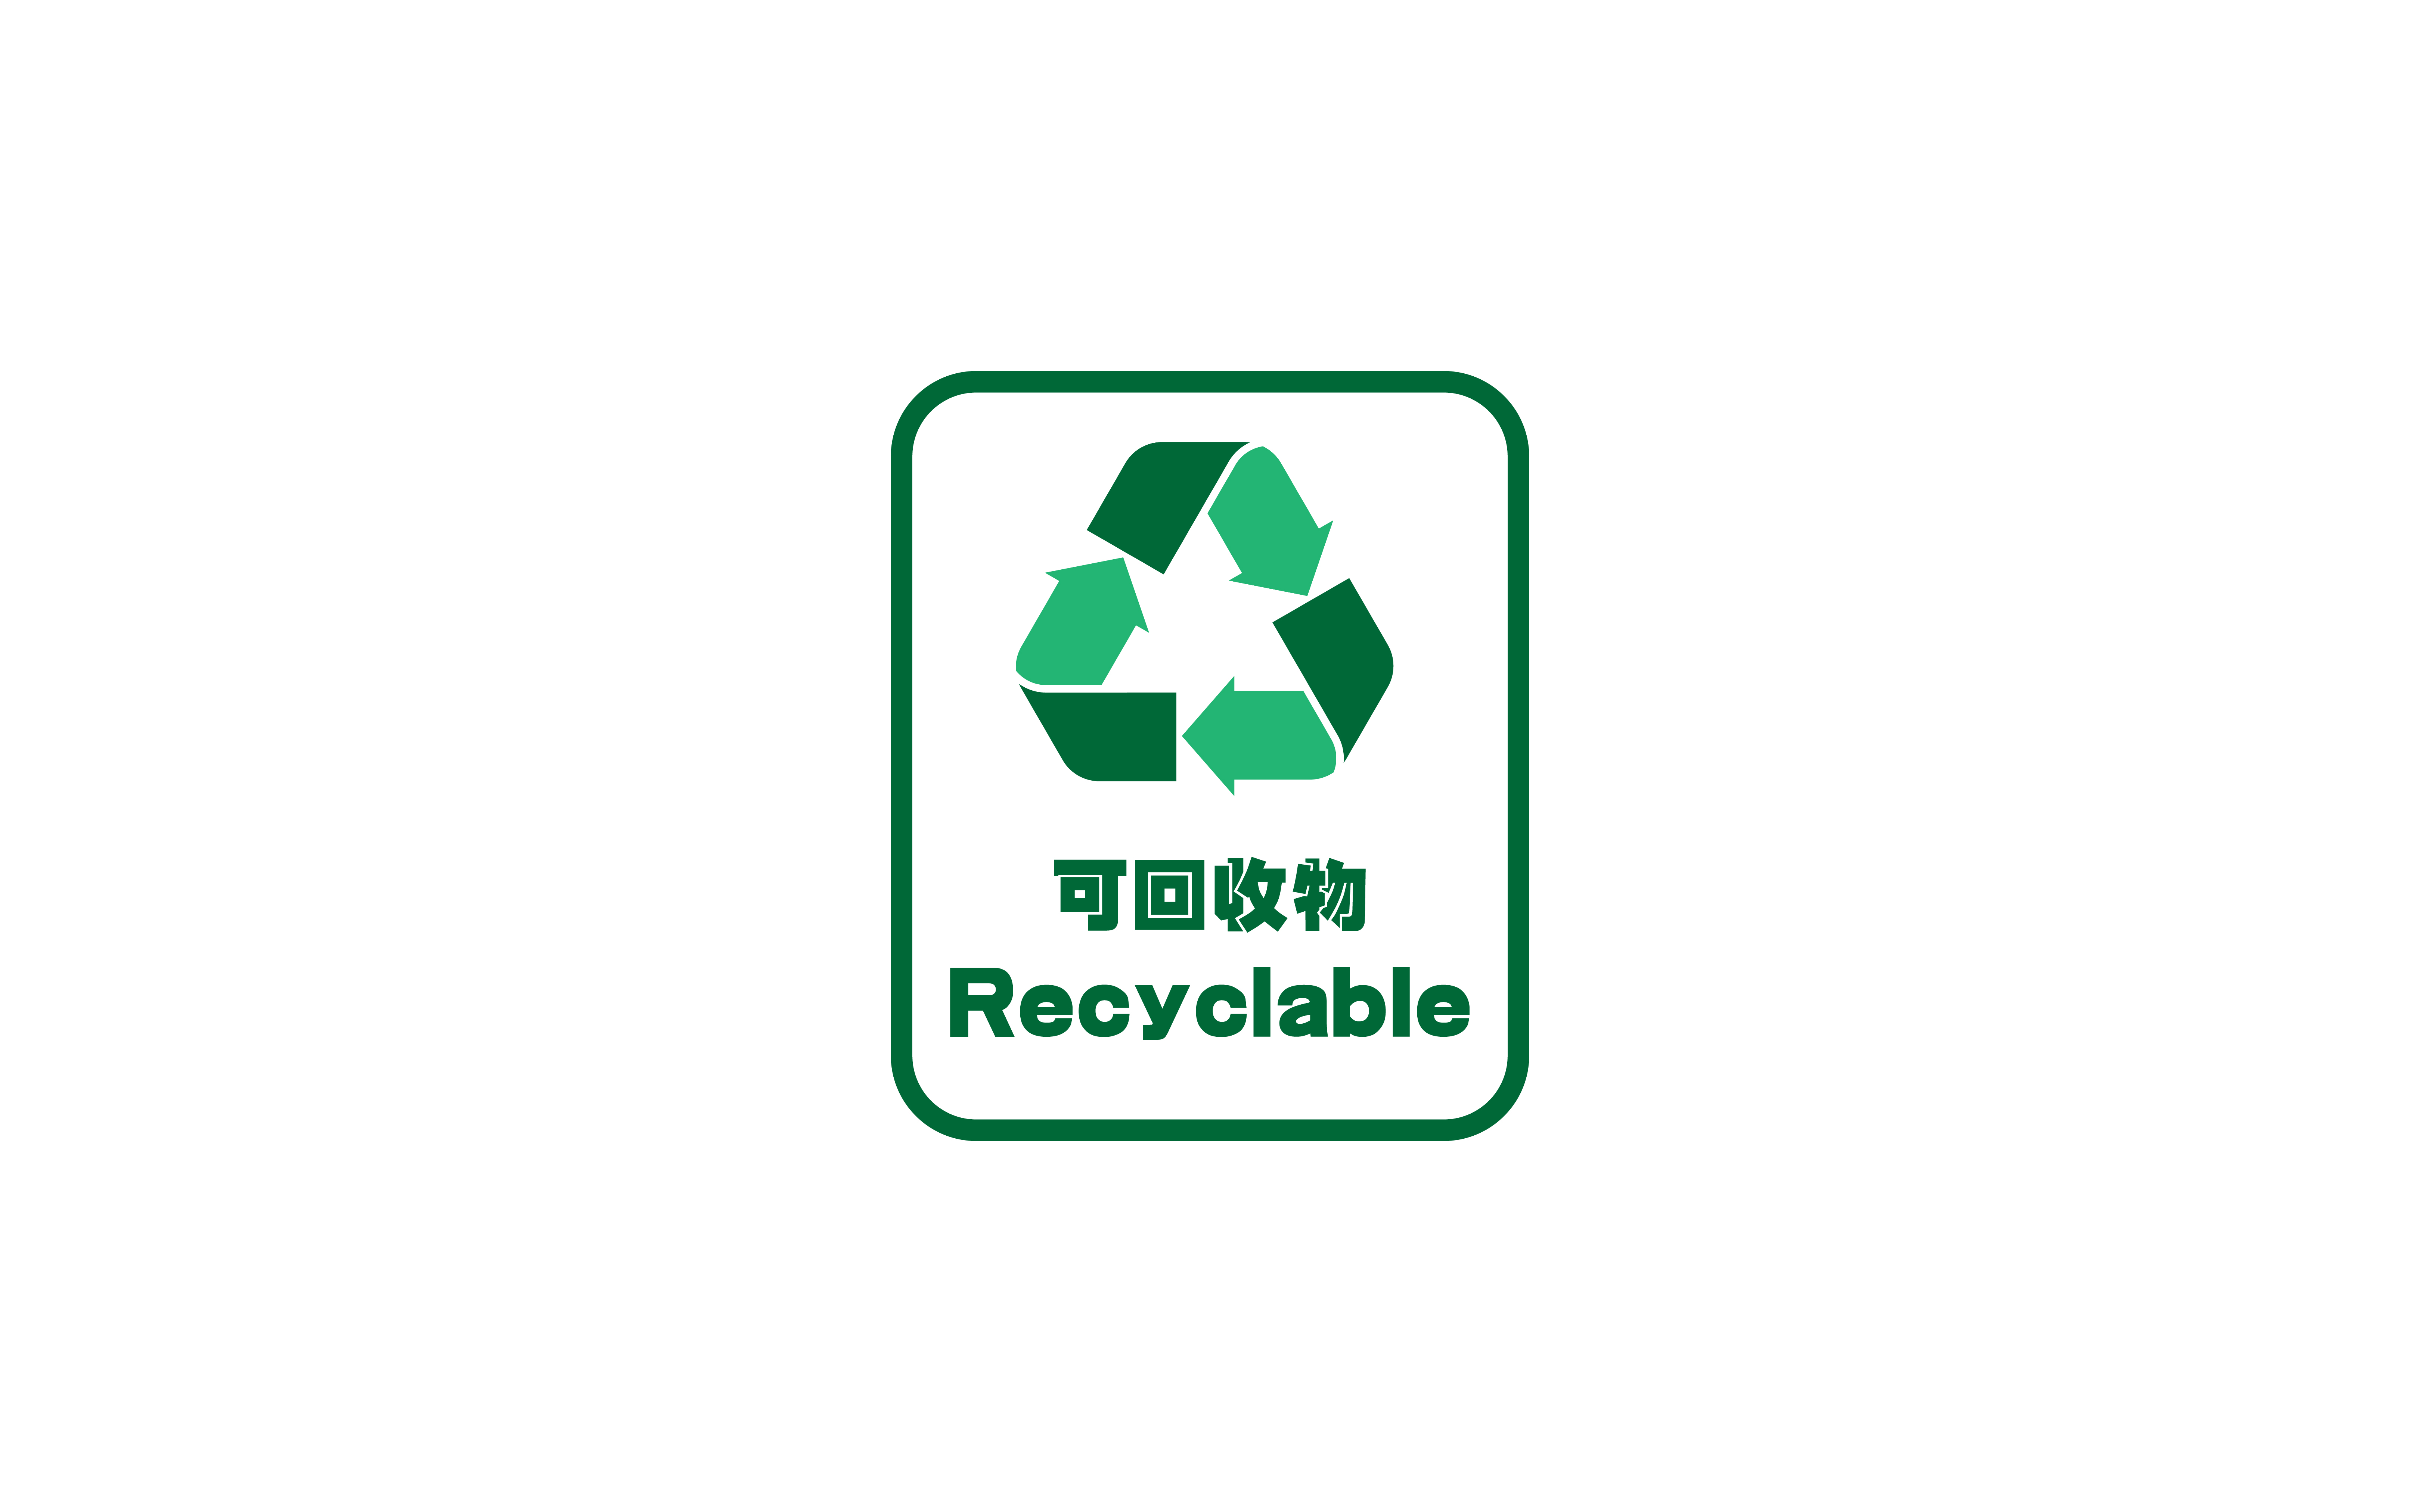 【Ai教程】用Ai画一个回收环保标志~